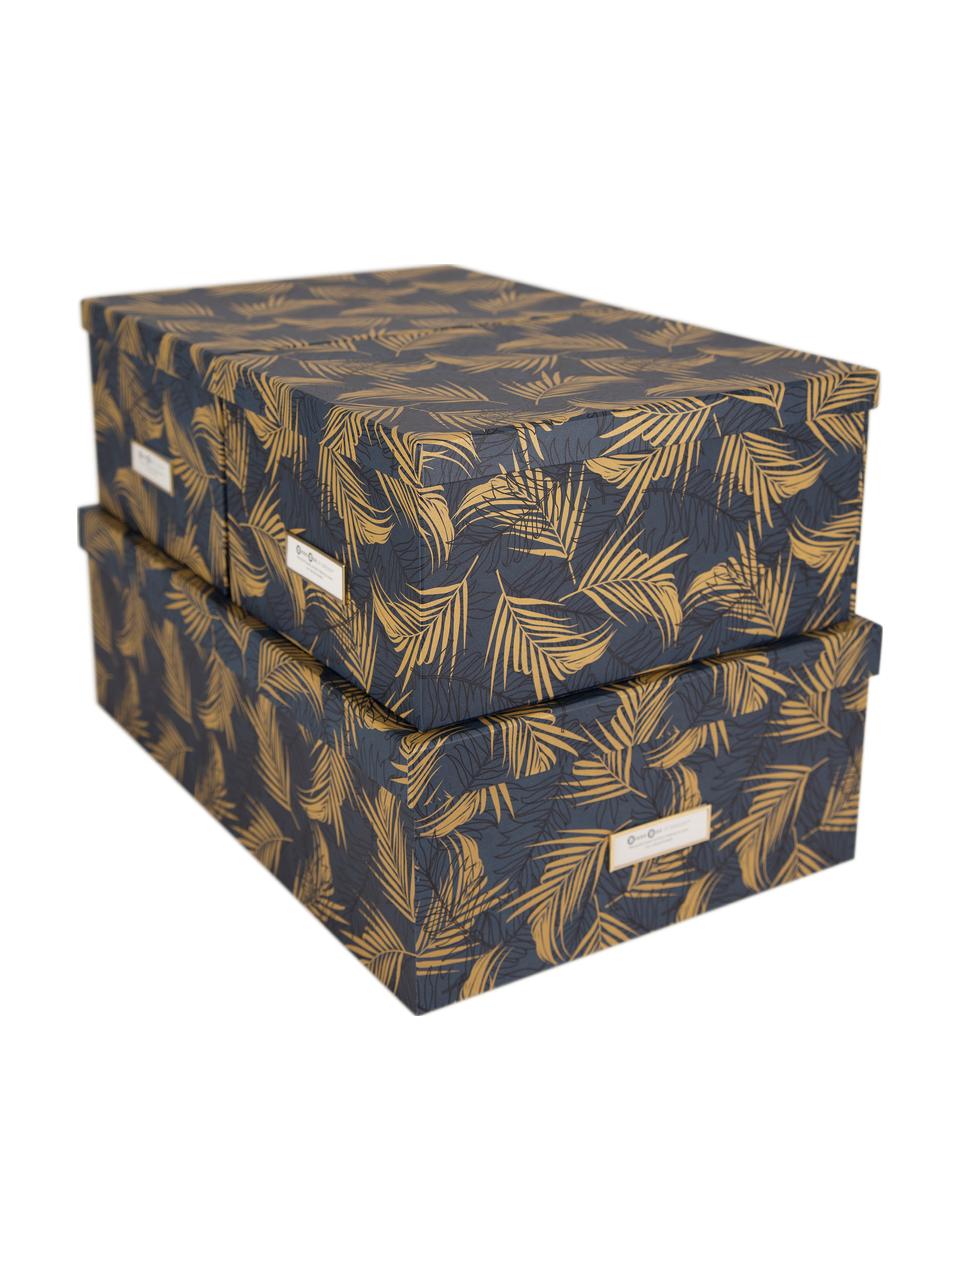 Sada úložných krabic Inge, 3 díly, Zlatá, šedo-modrá, Sada s různými velikostmi